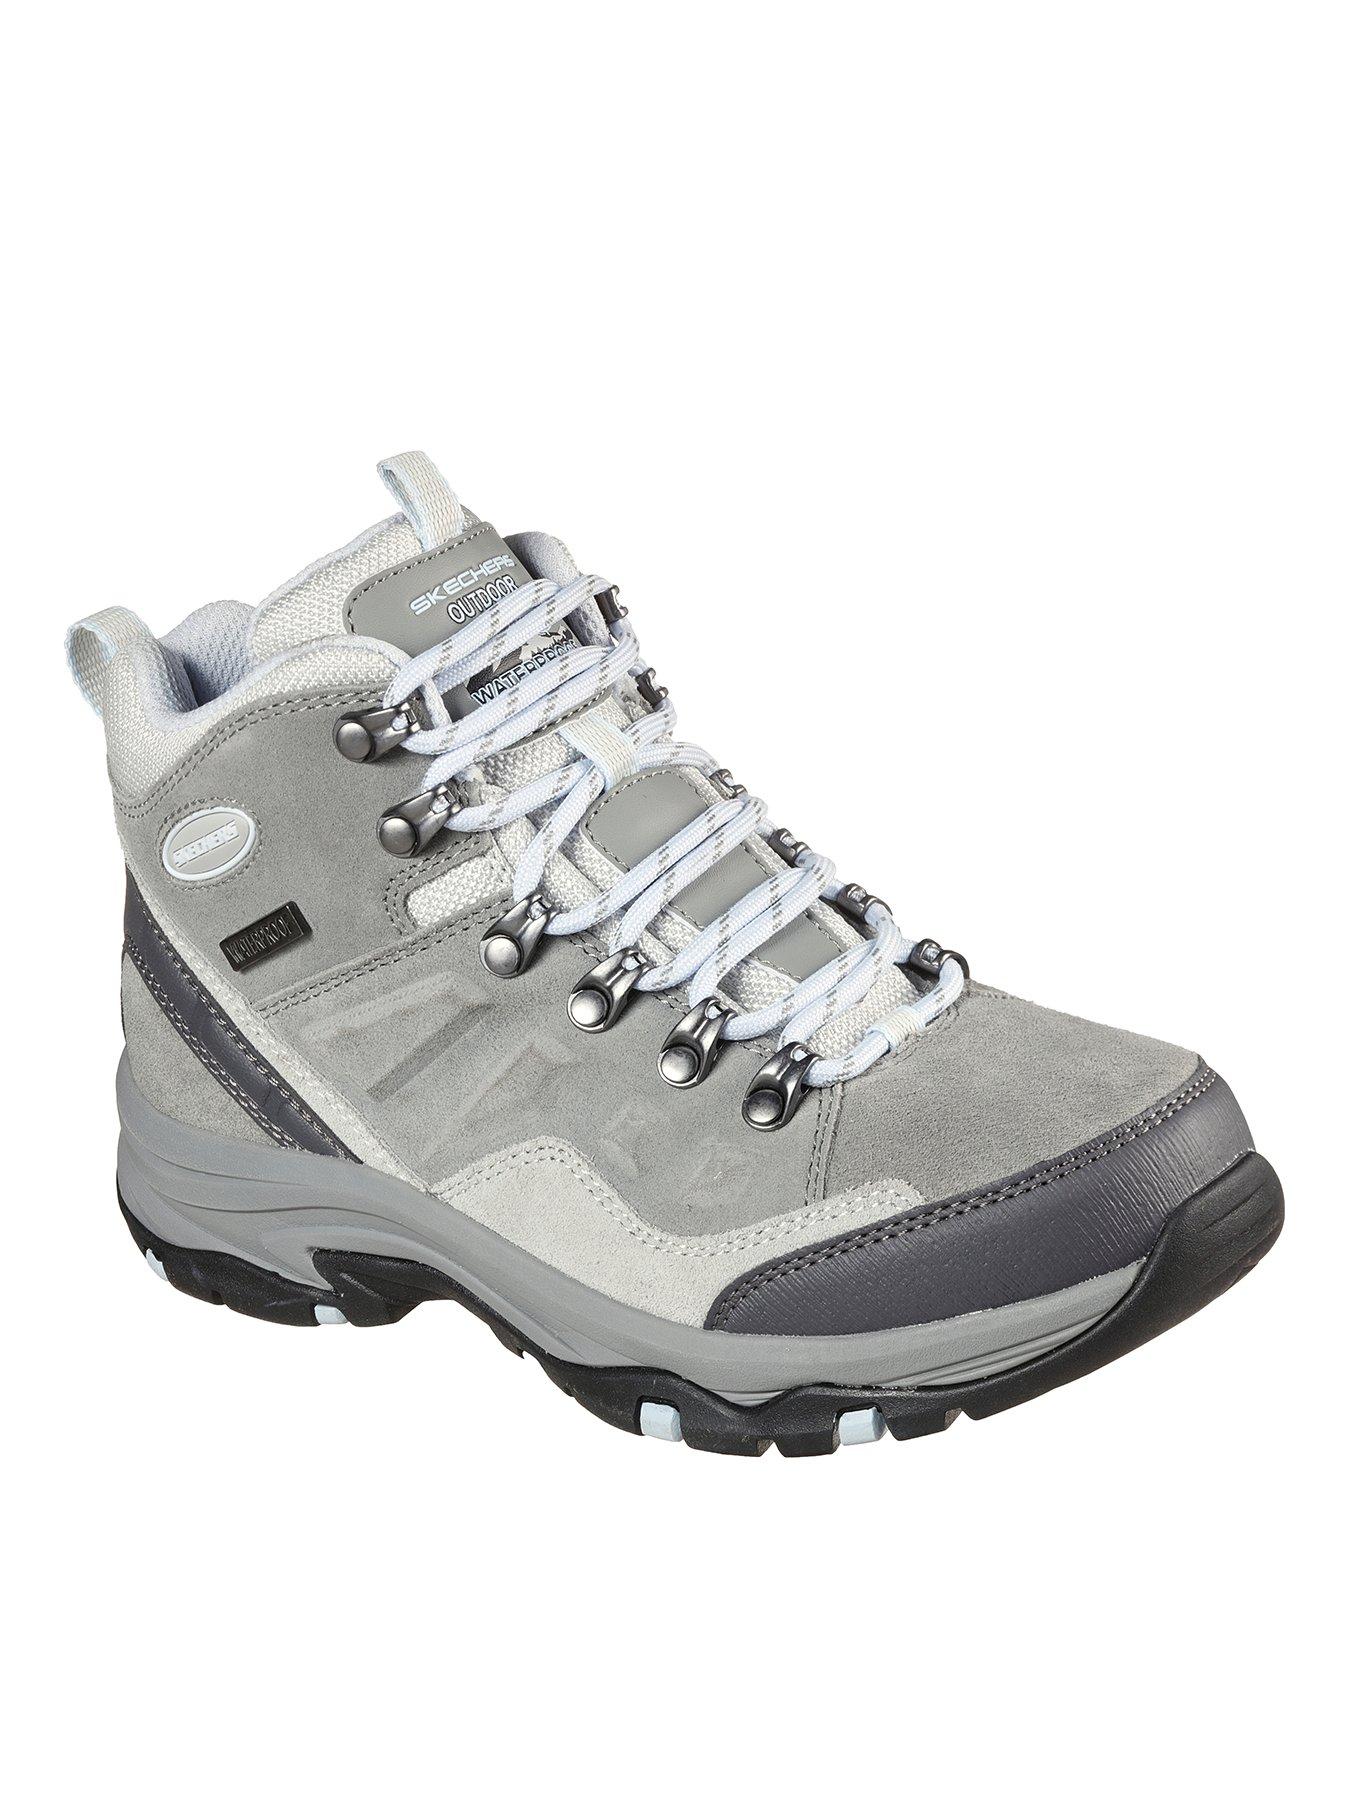 sketchers grey boots